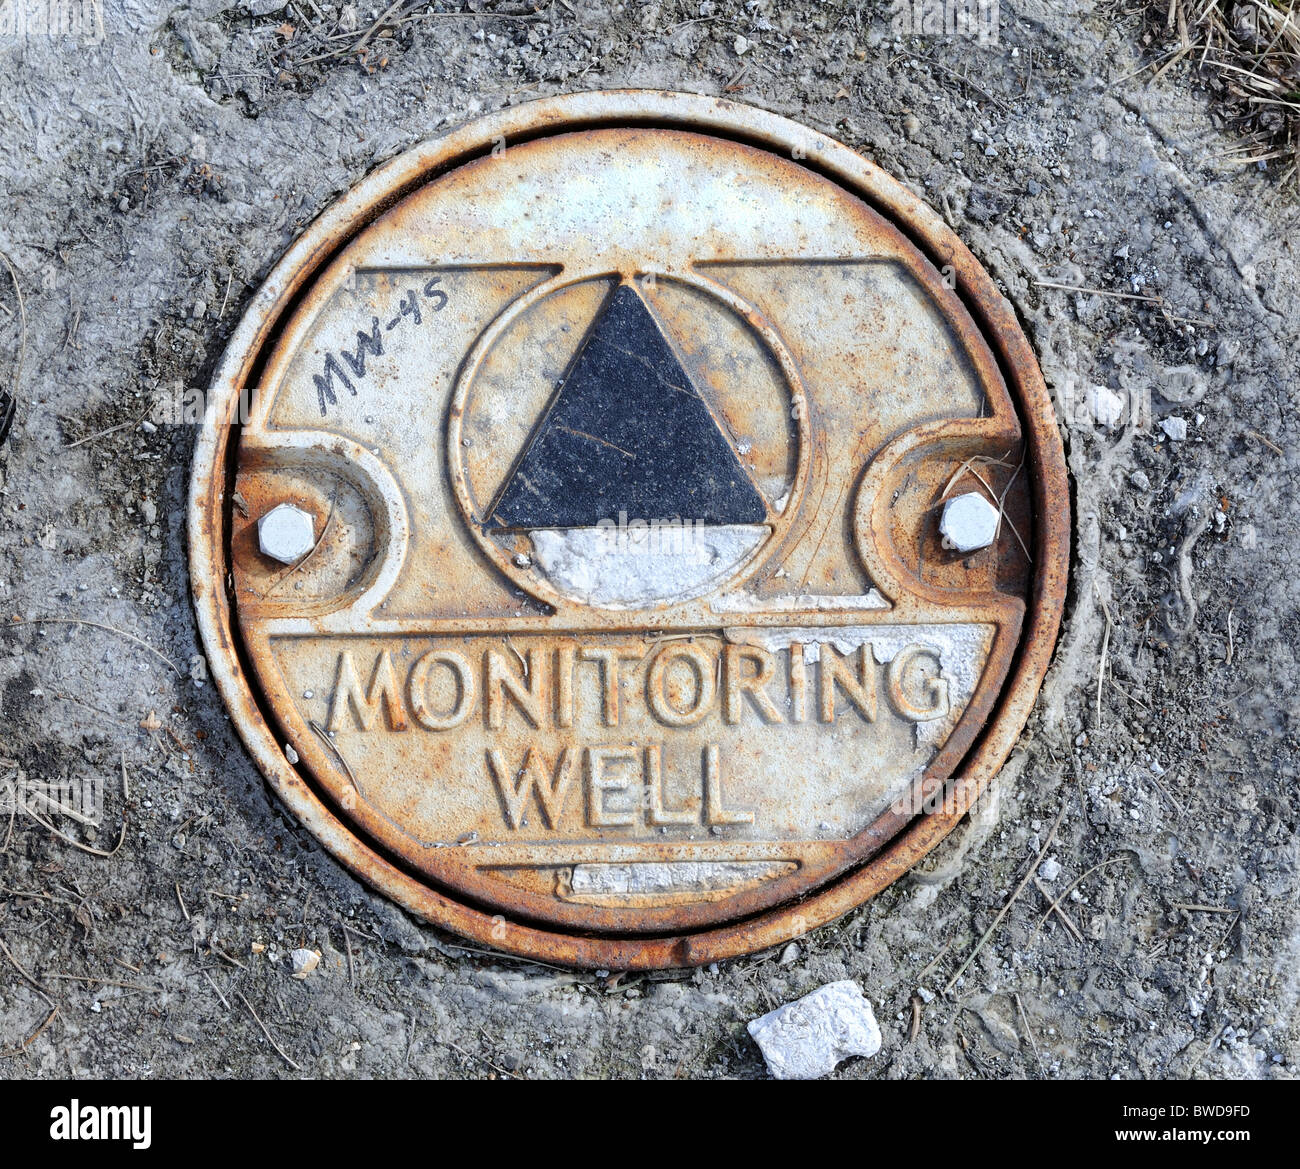 Environmental Monitoring Well at Contaminated Site Stock Photo